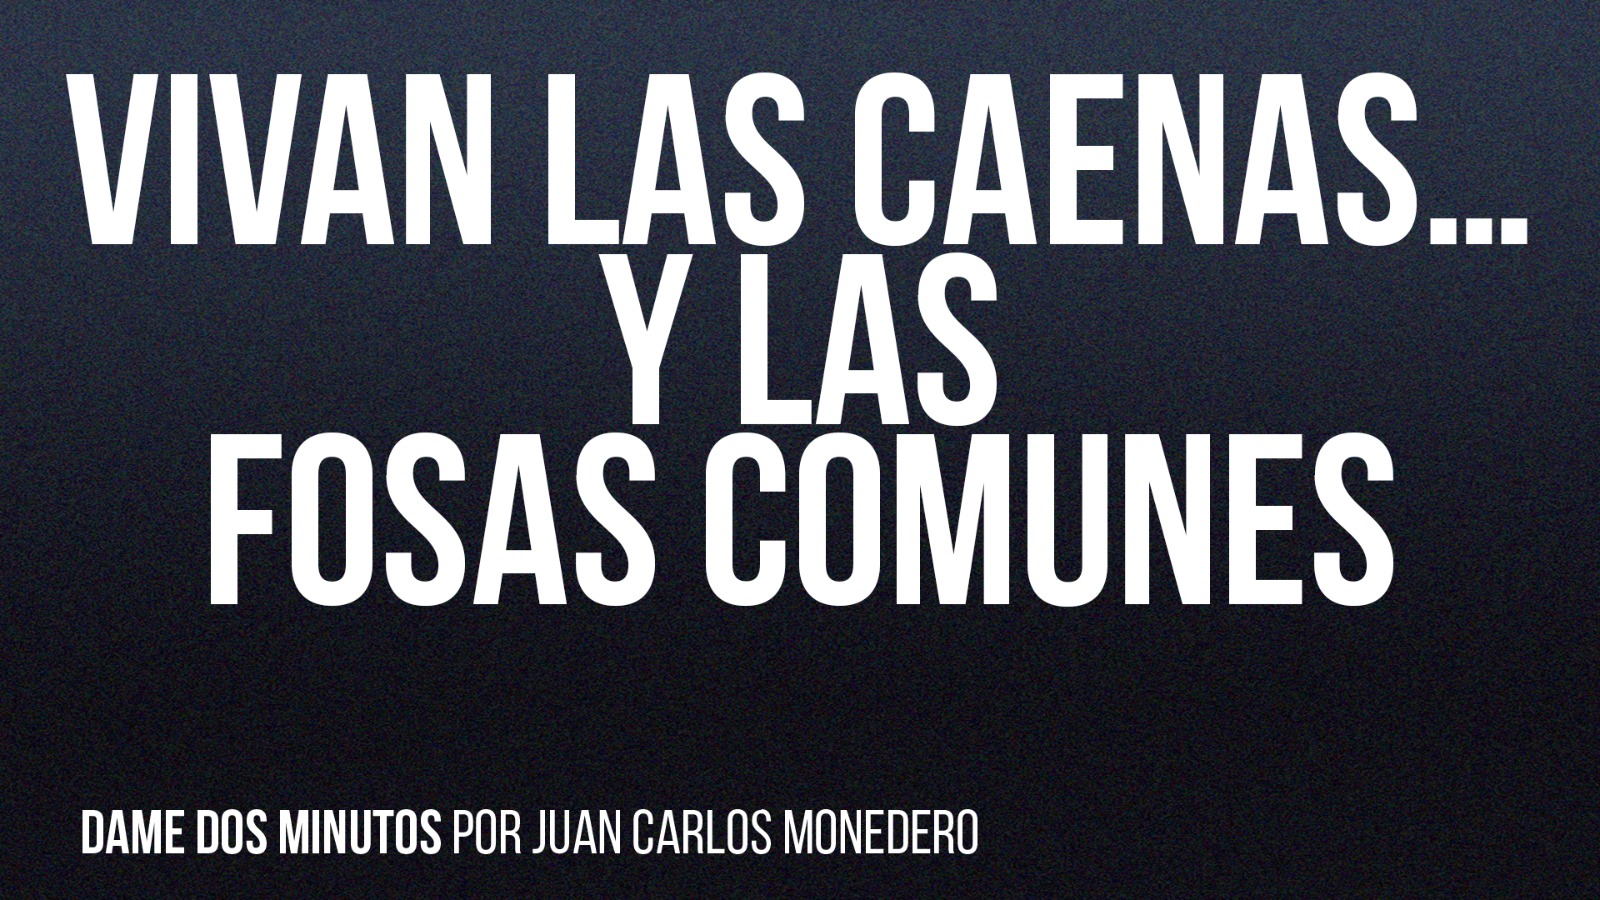 Juan Carlos Monedero on Twitter: "En democracia, cuando los ladrones son  recibidos con aplausos y vítores, algo no funciona. ¡Vivan el rey y las  caenas! ¡Cuántas humillaciones hacen falta para que algunos